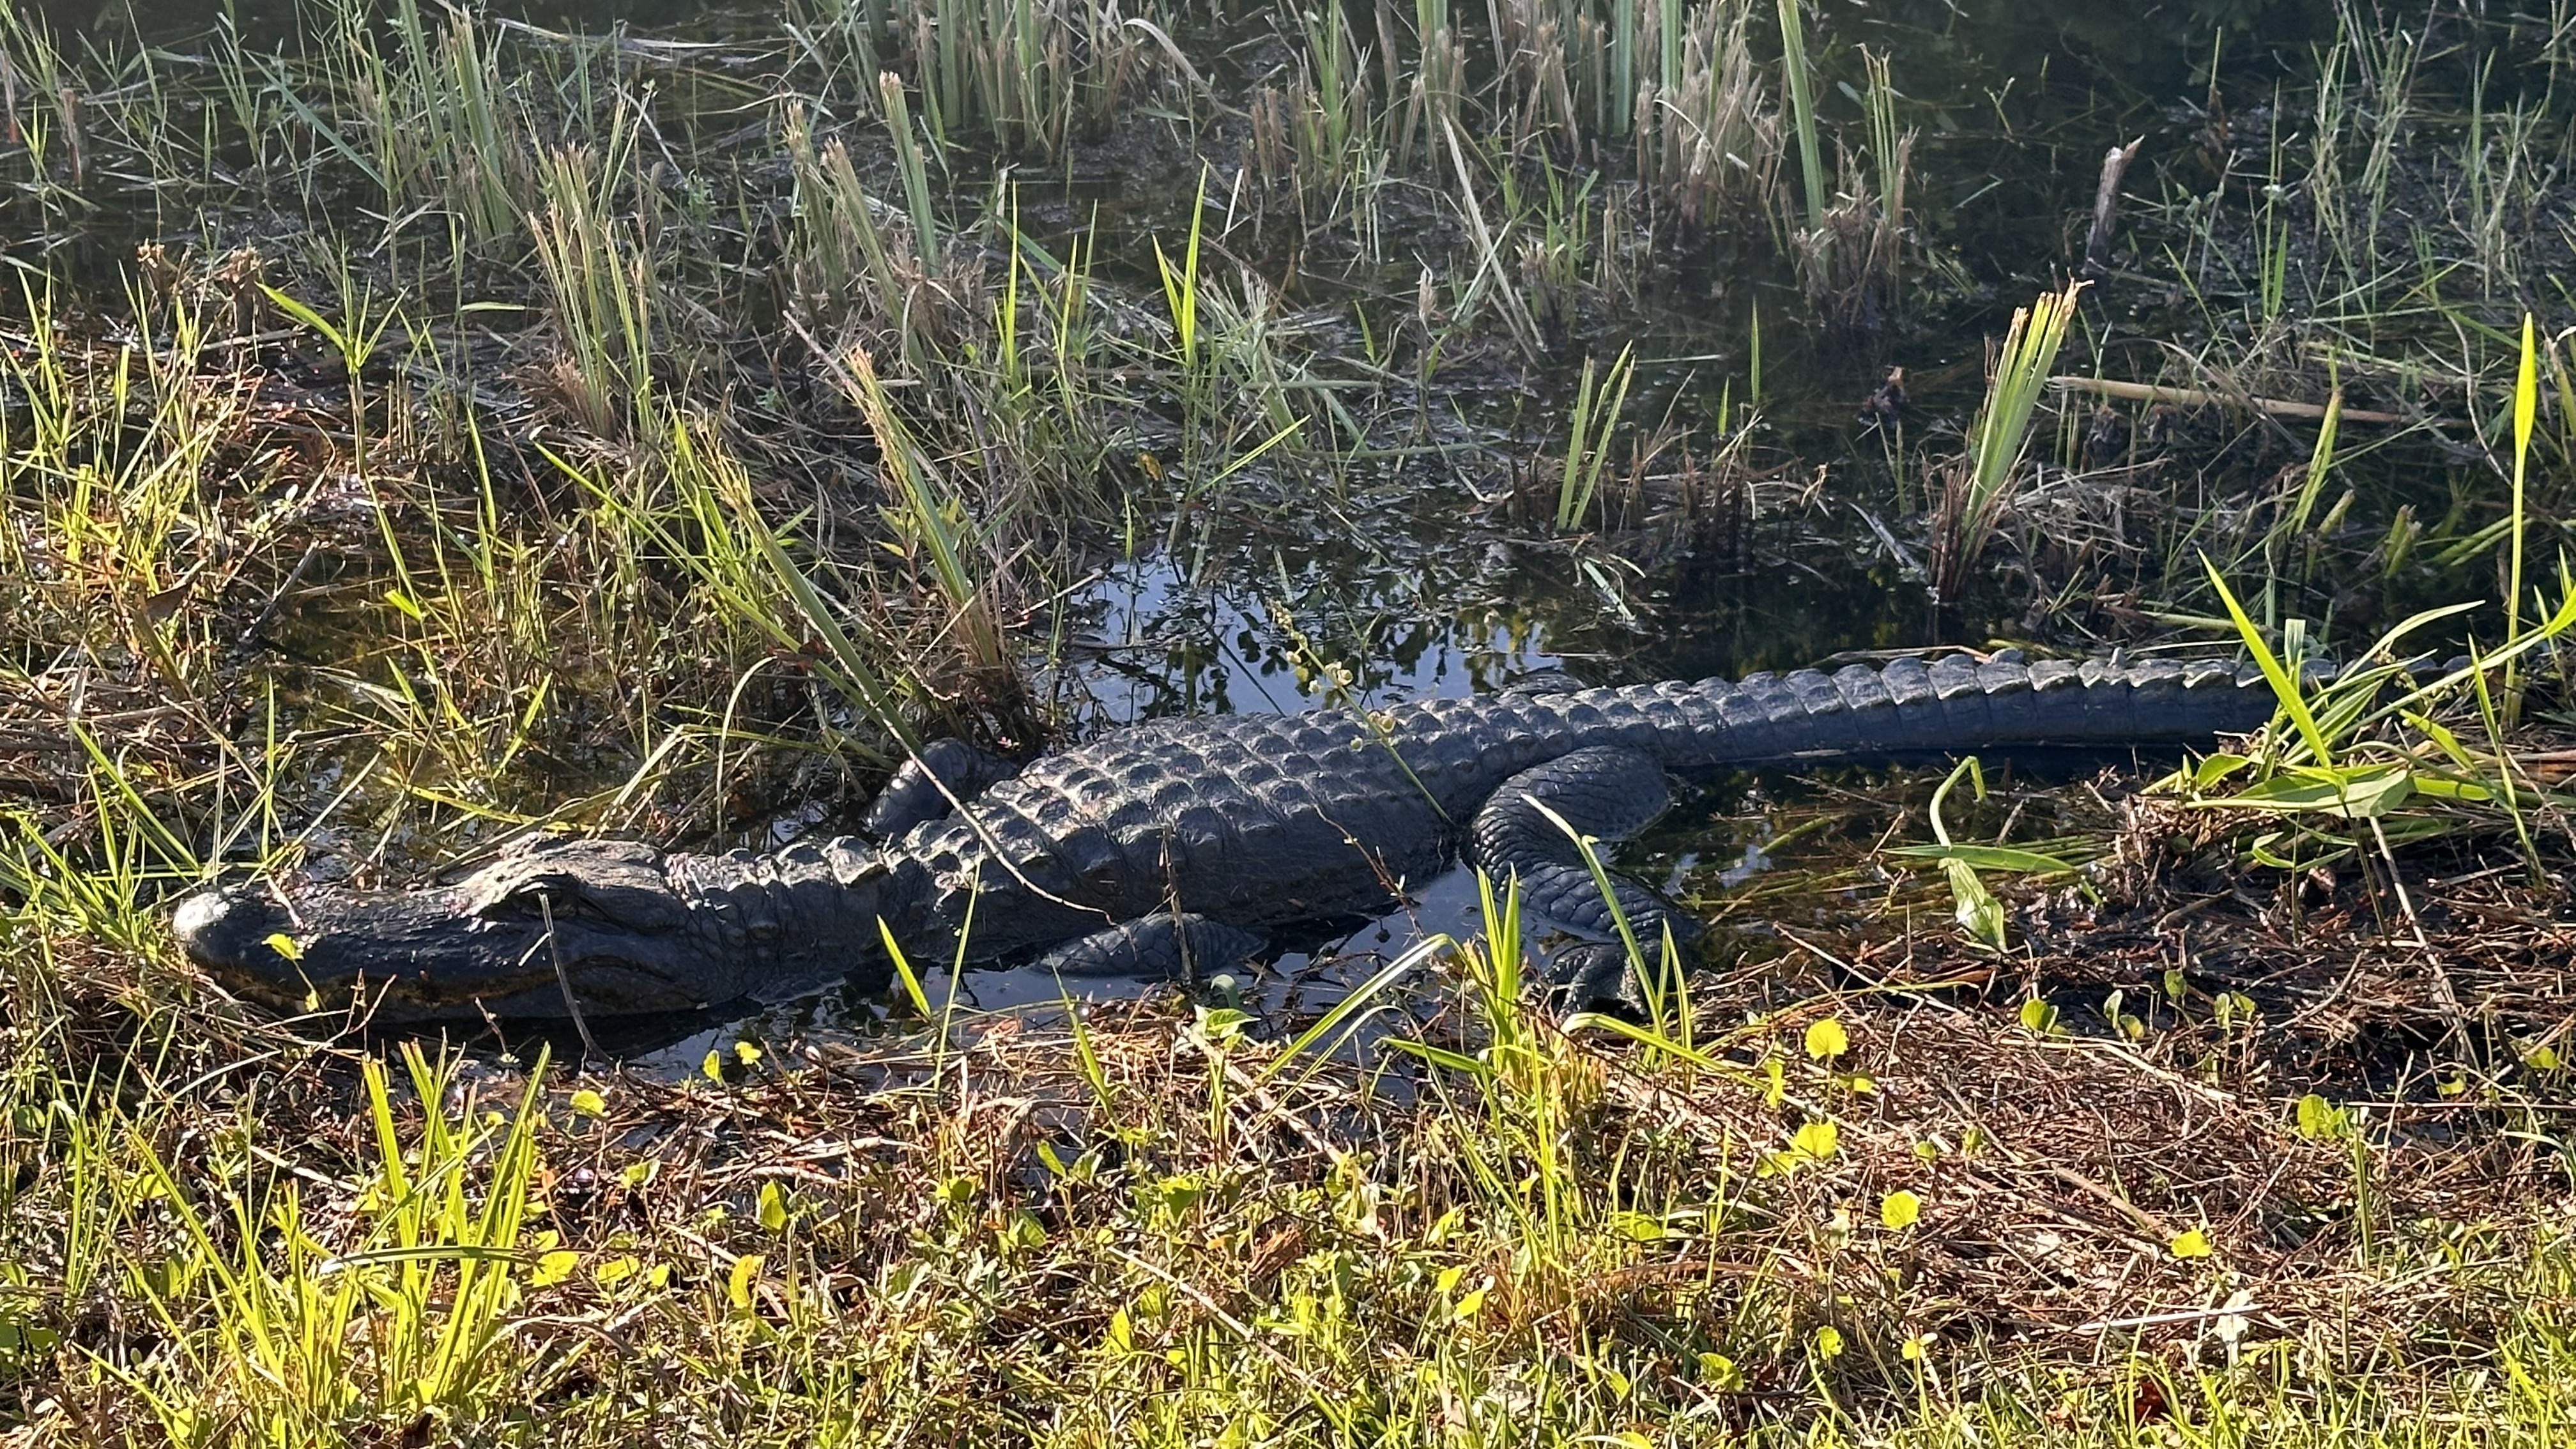 Alligator in Everglades